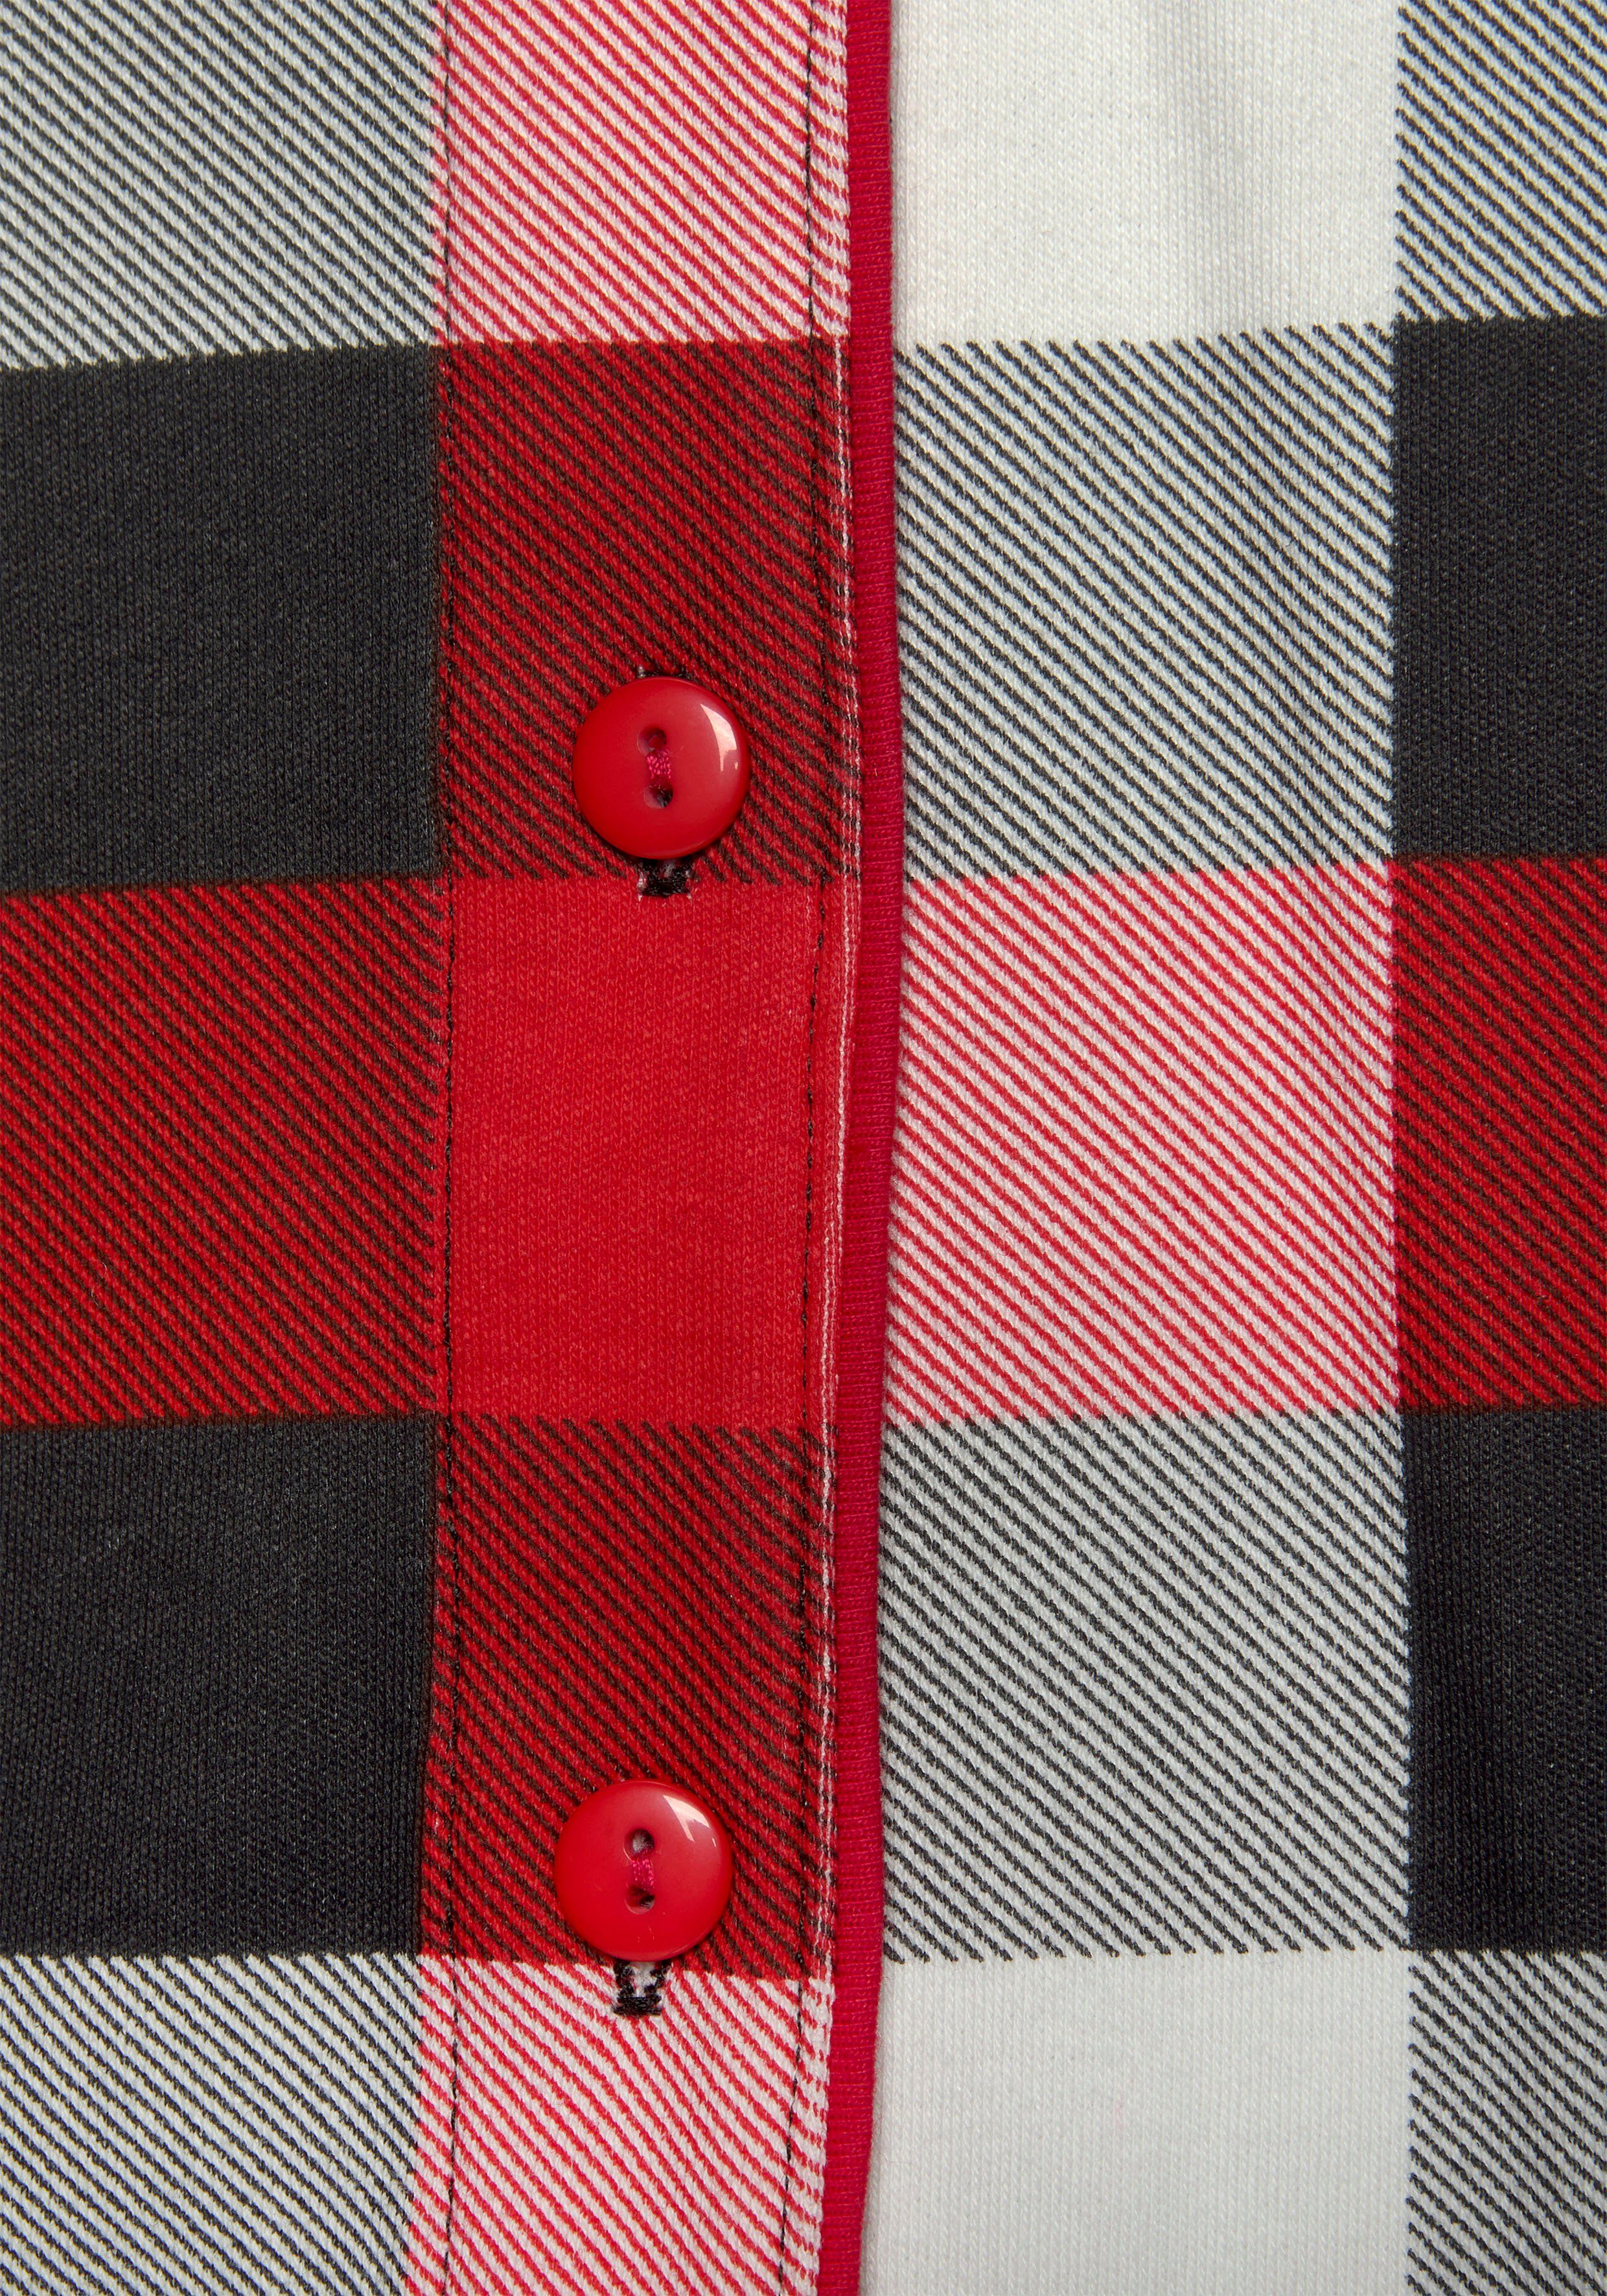 Karodruck Schlafanzug schwarz-rot-weiß Schlafmaske) tlg., incl. LASCANA mit (3